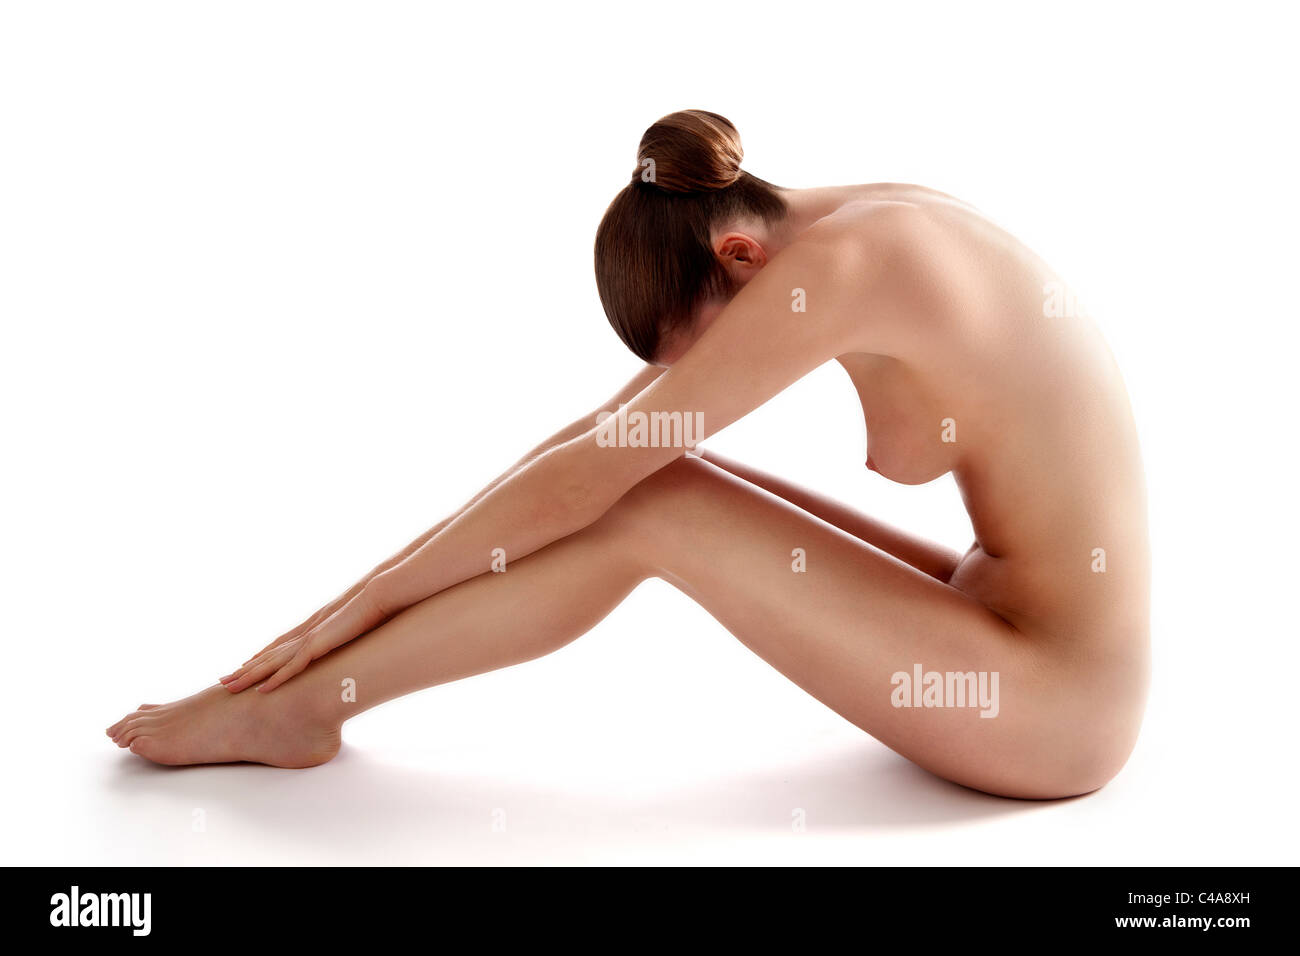 Jeune femme nue assise Foto de stock